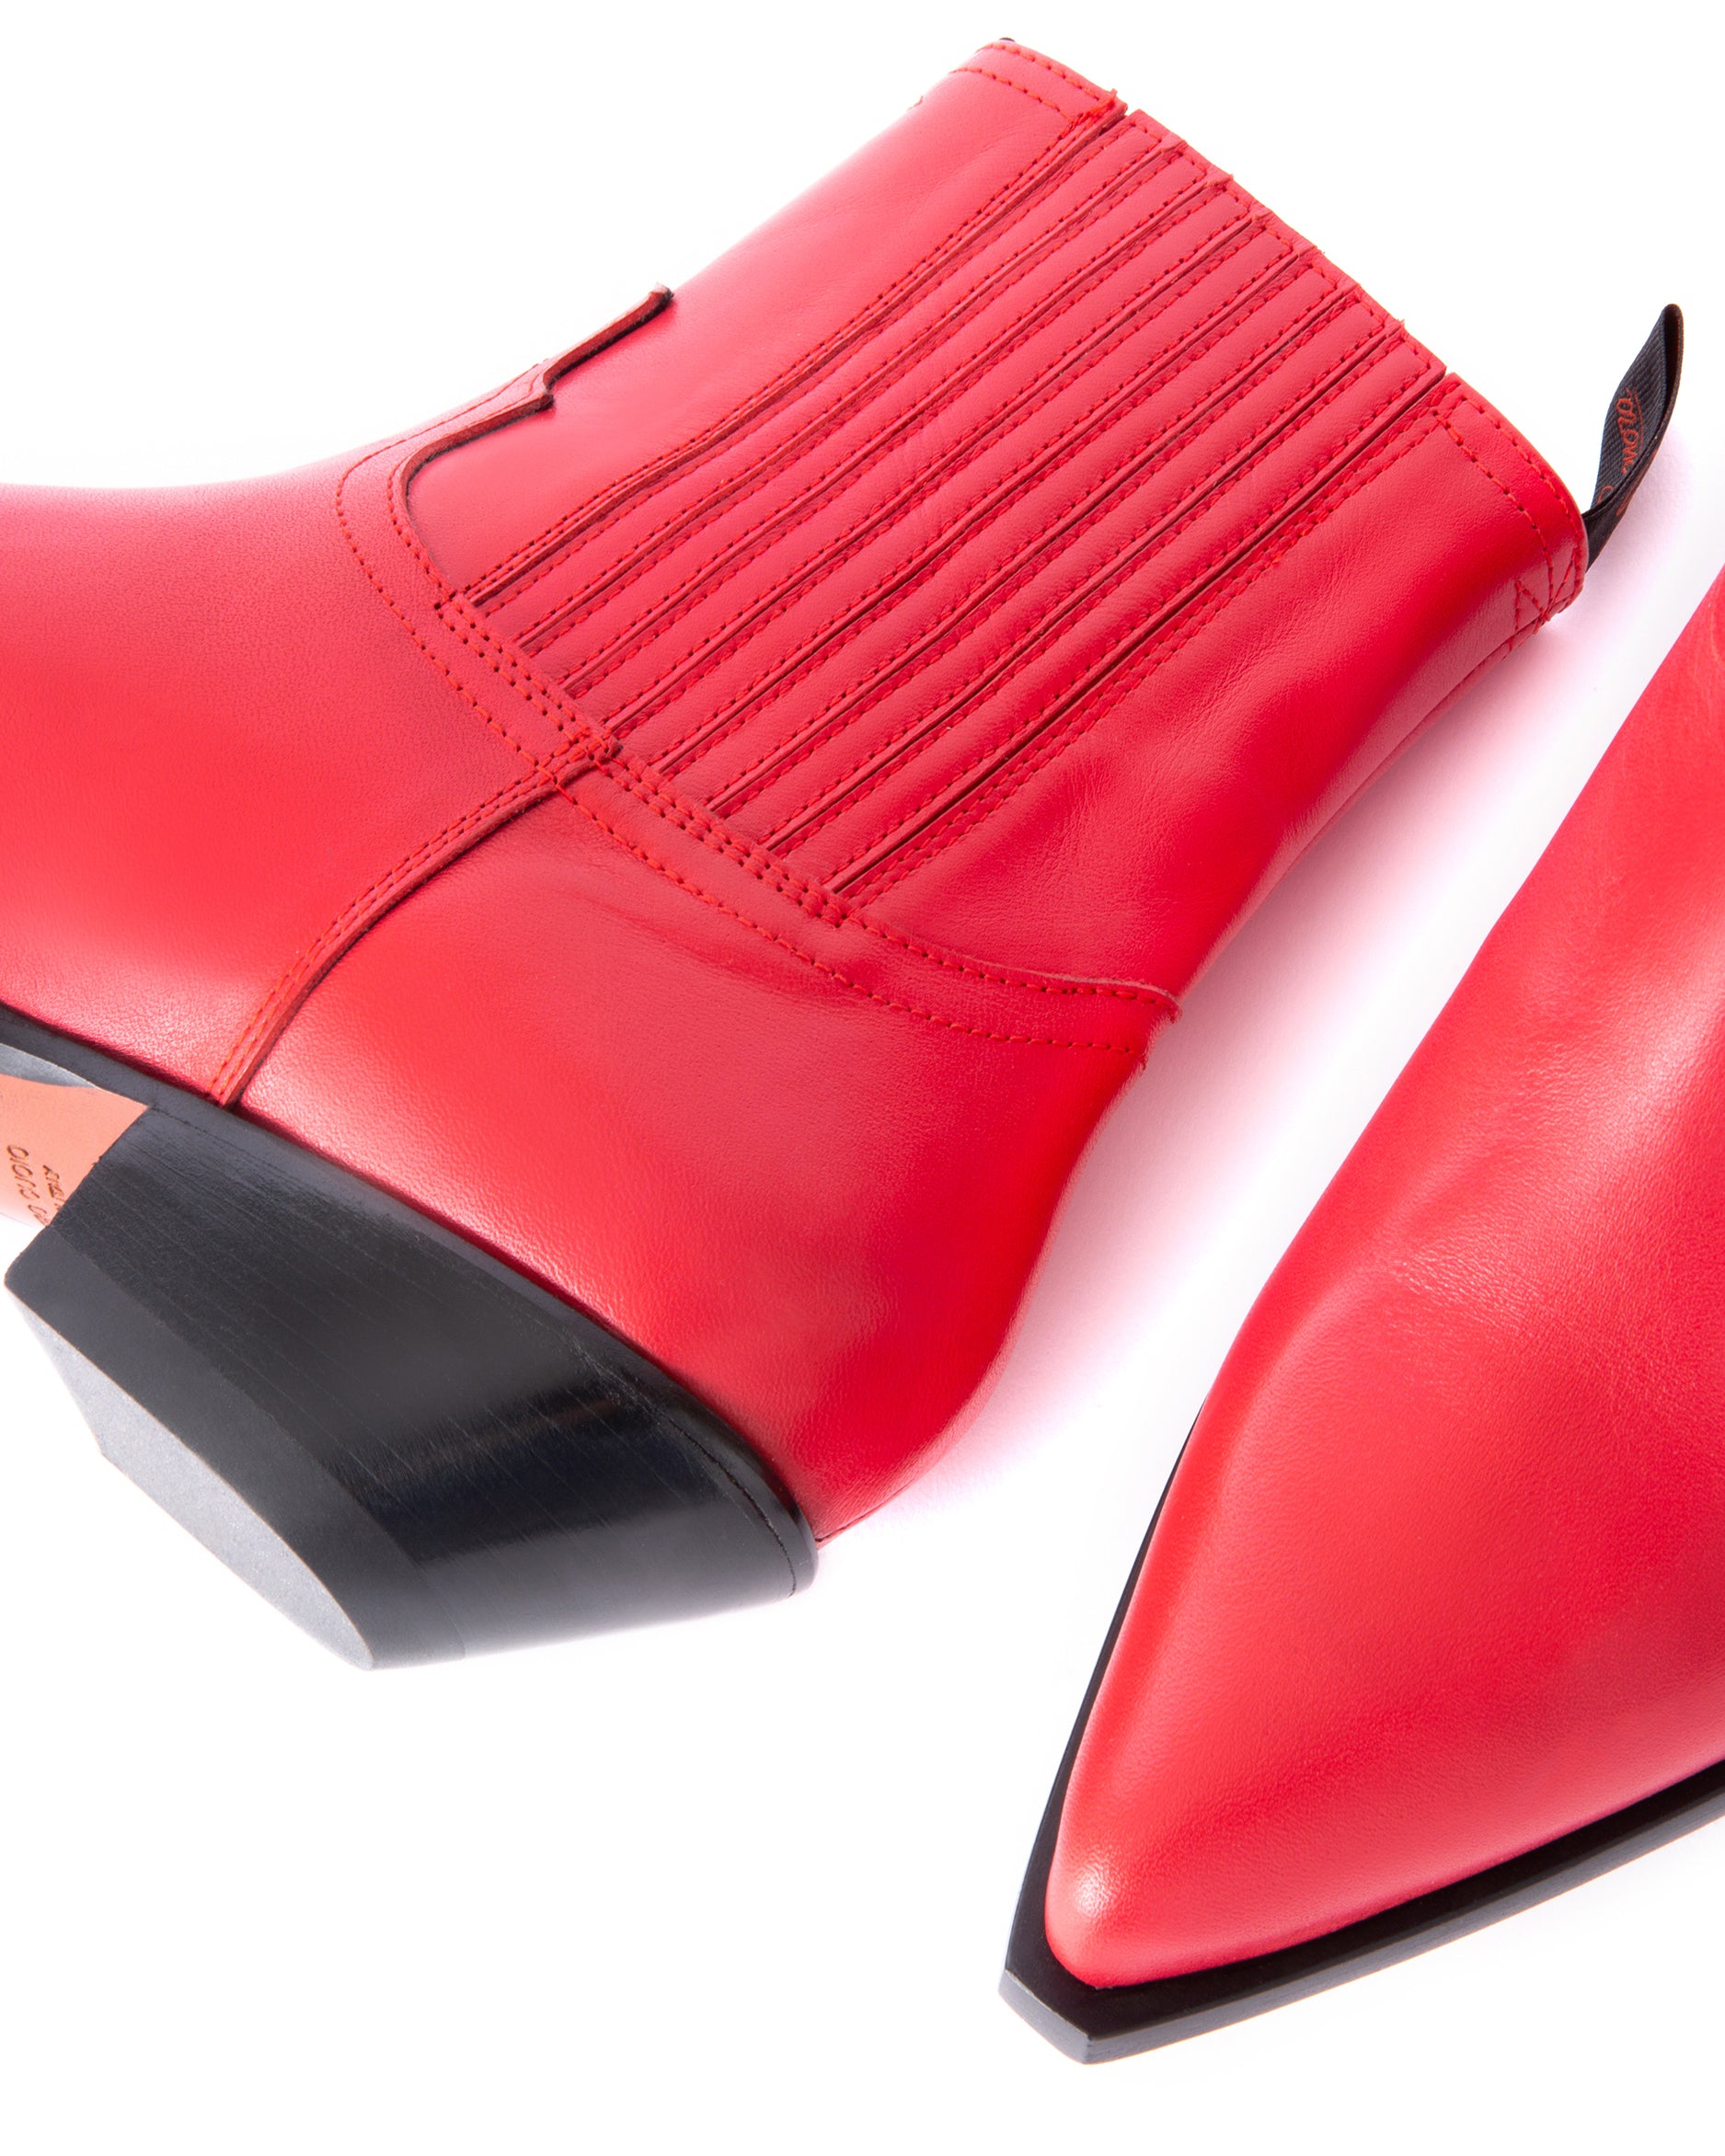 HIDALGO Men's Ankle Boots in Red Calfskin